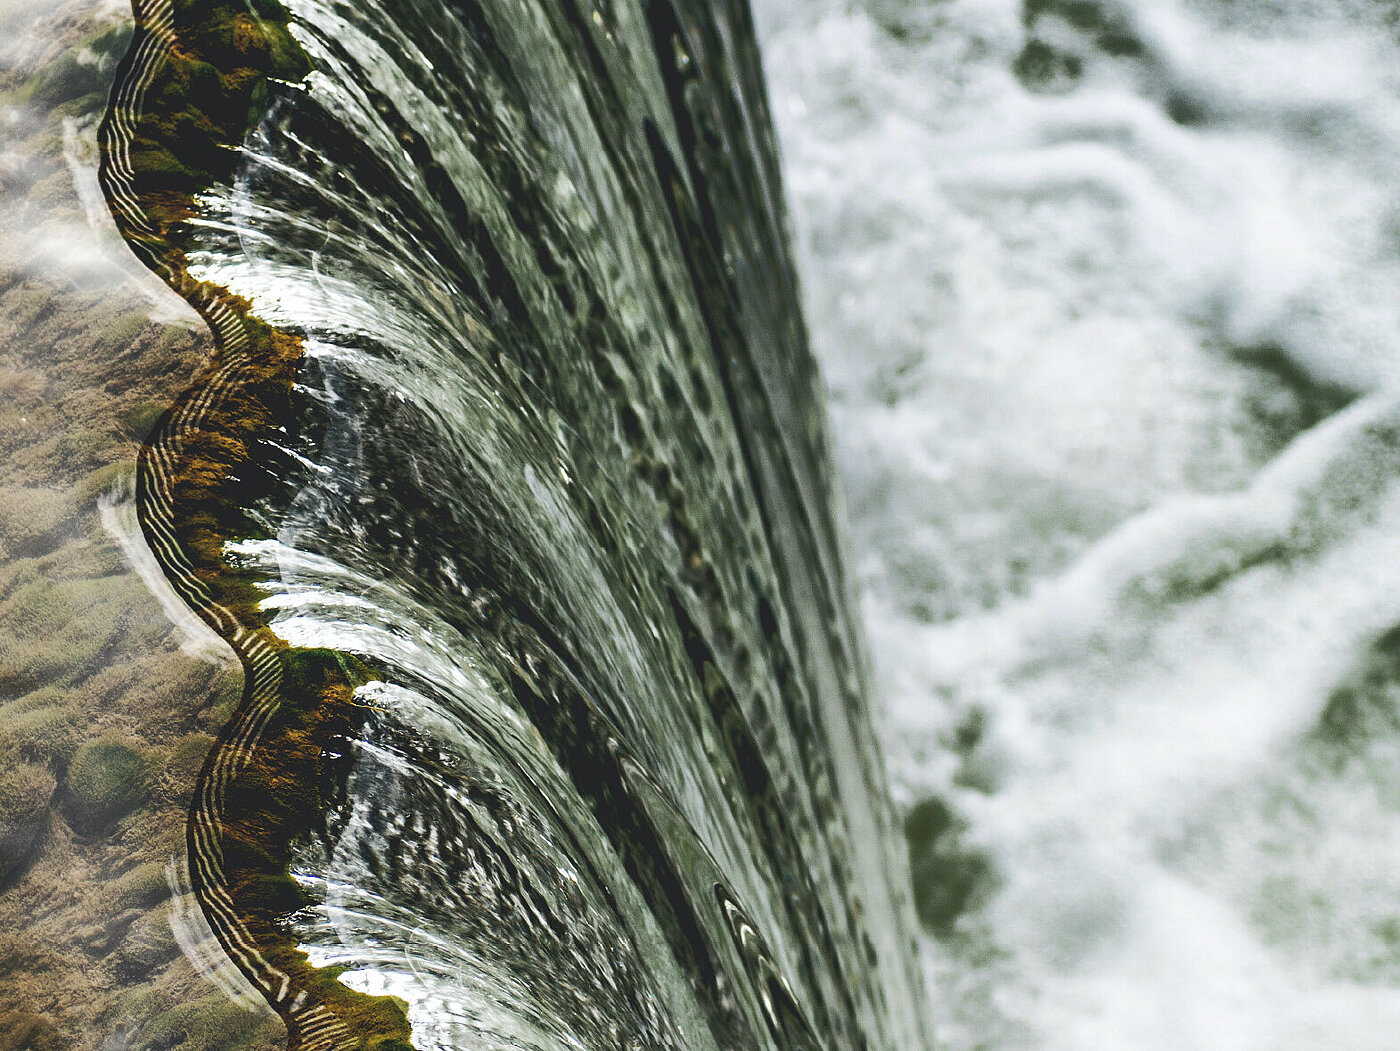 Bildausschnitt eines großen Wasserfalls. Das Wasser eines Flusses fällt aus großer Höhe in die Tiefe.